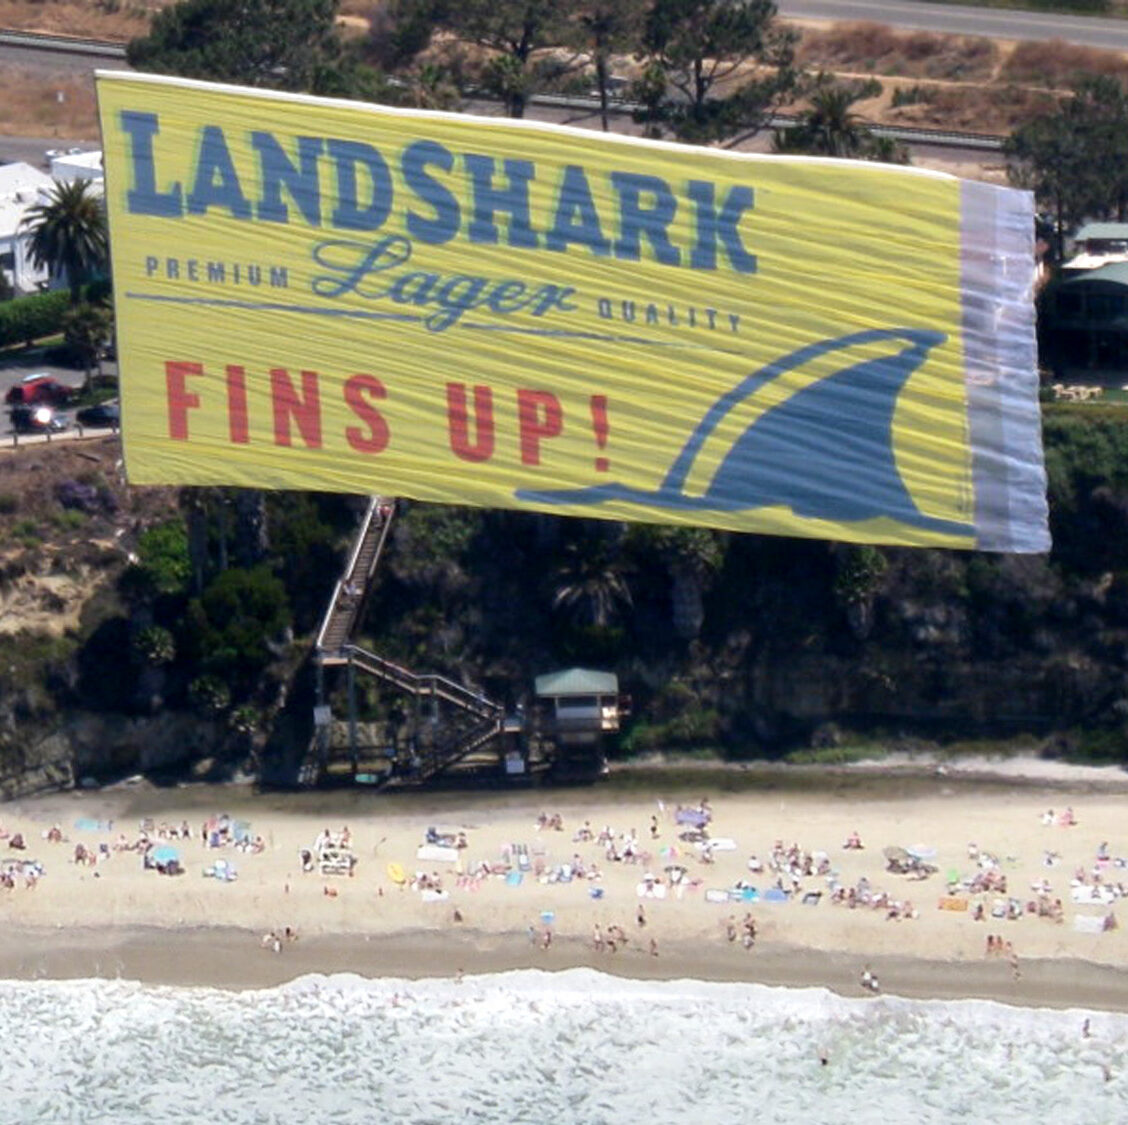 Land Shark Lager Aerial Advertising Billboard